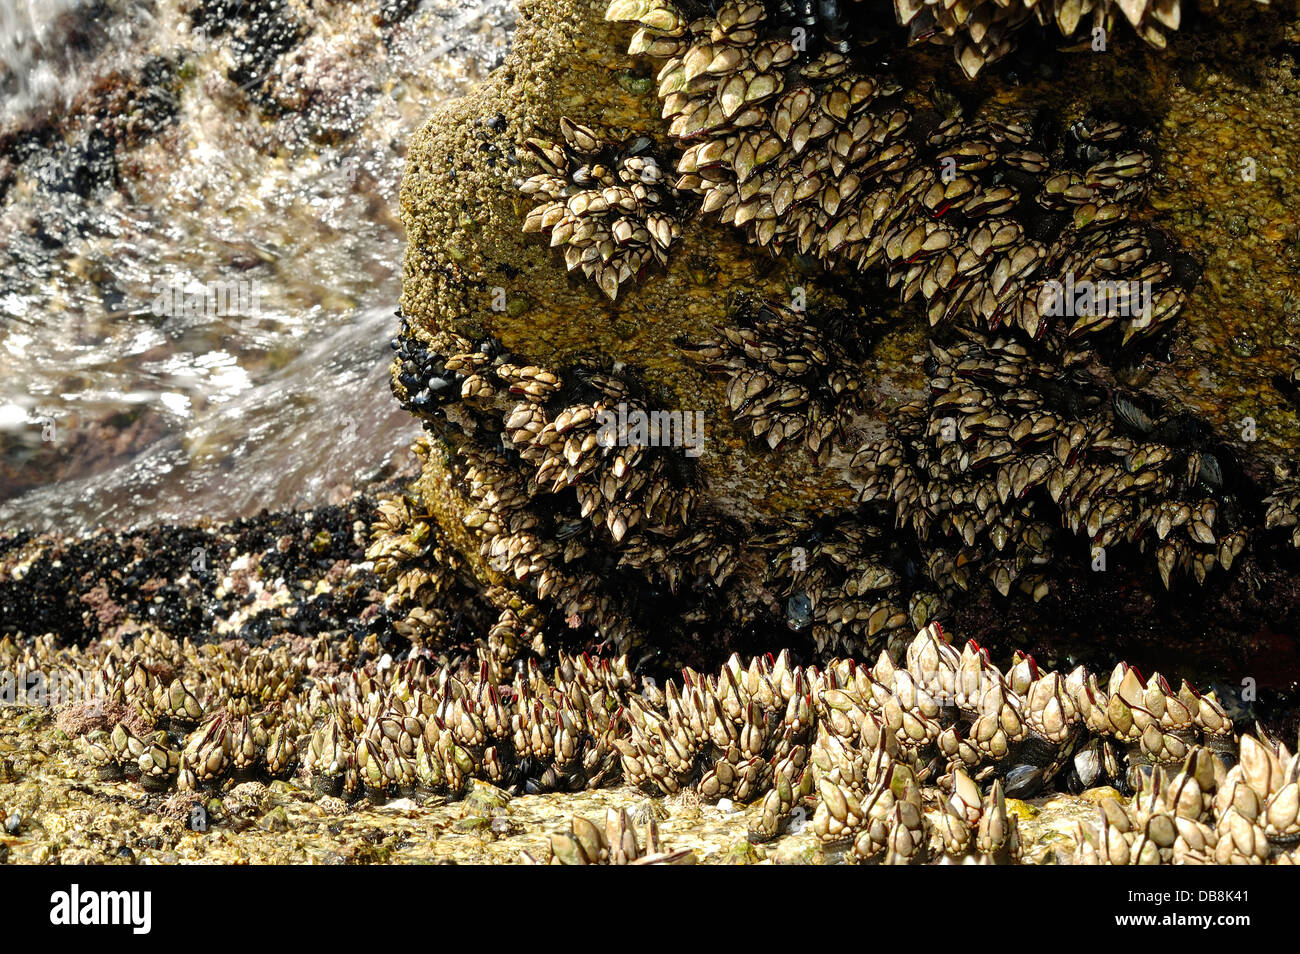 Les roches côtières couvertes à Goose barnacles (pollicipes pollicipes) et d'autres coquillages Banque D'Images